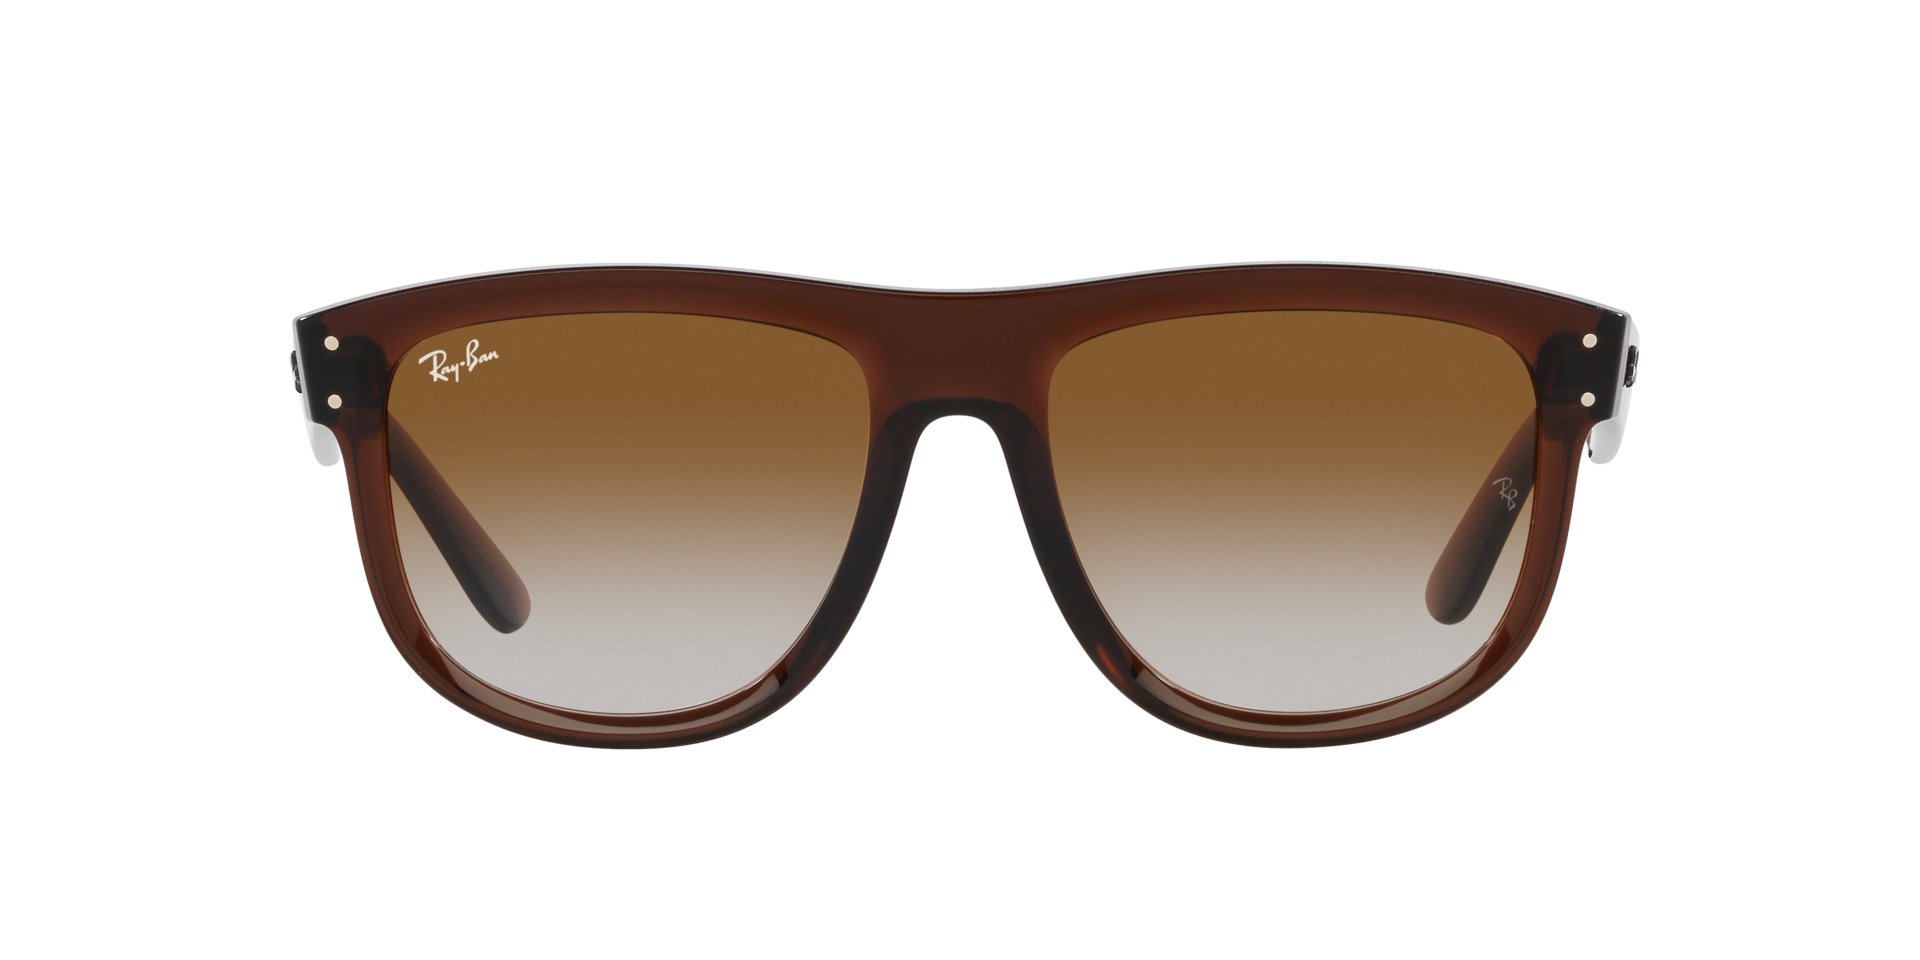 Das Bild zeigt die Sonnenbrille RBR0501S 6711GA von der  Marke Ray Ban in kamelbraun transparent.